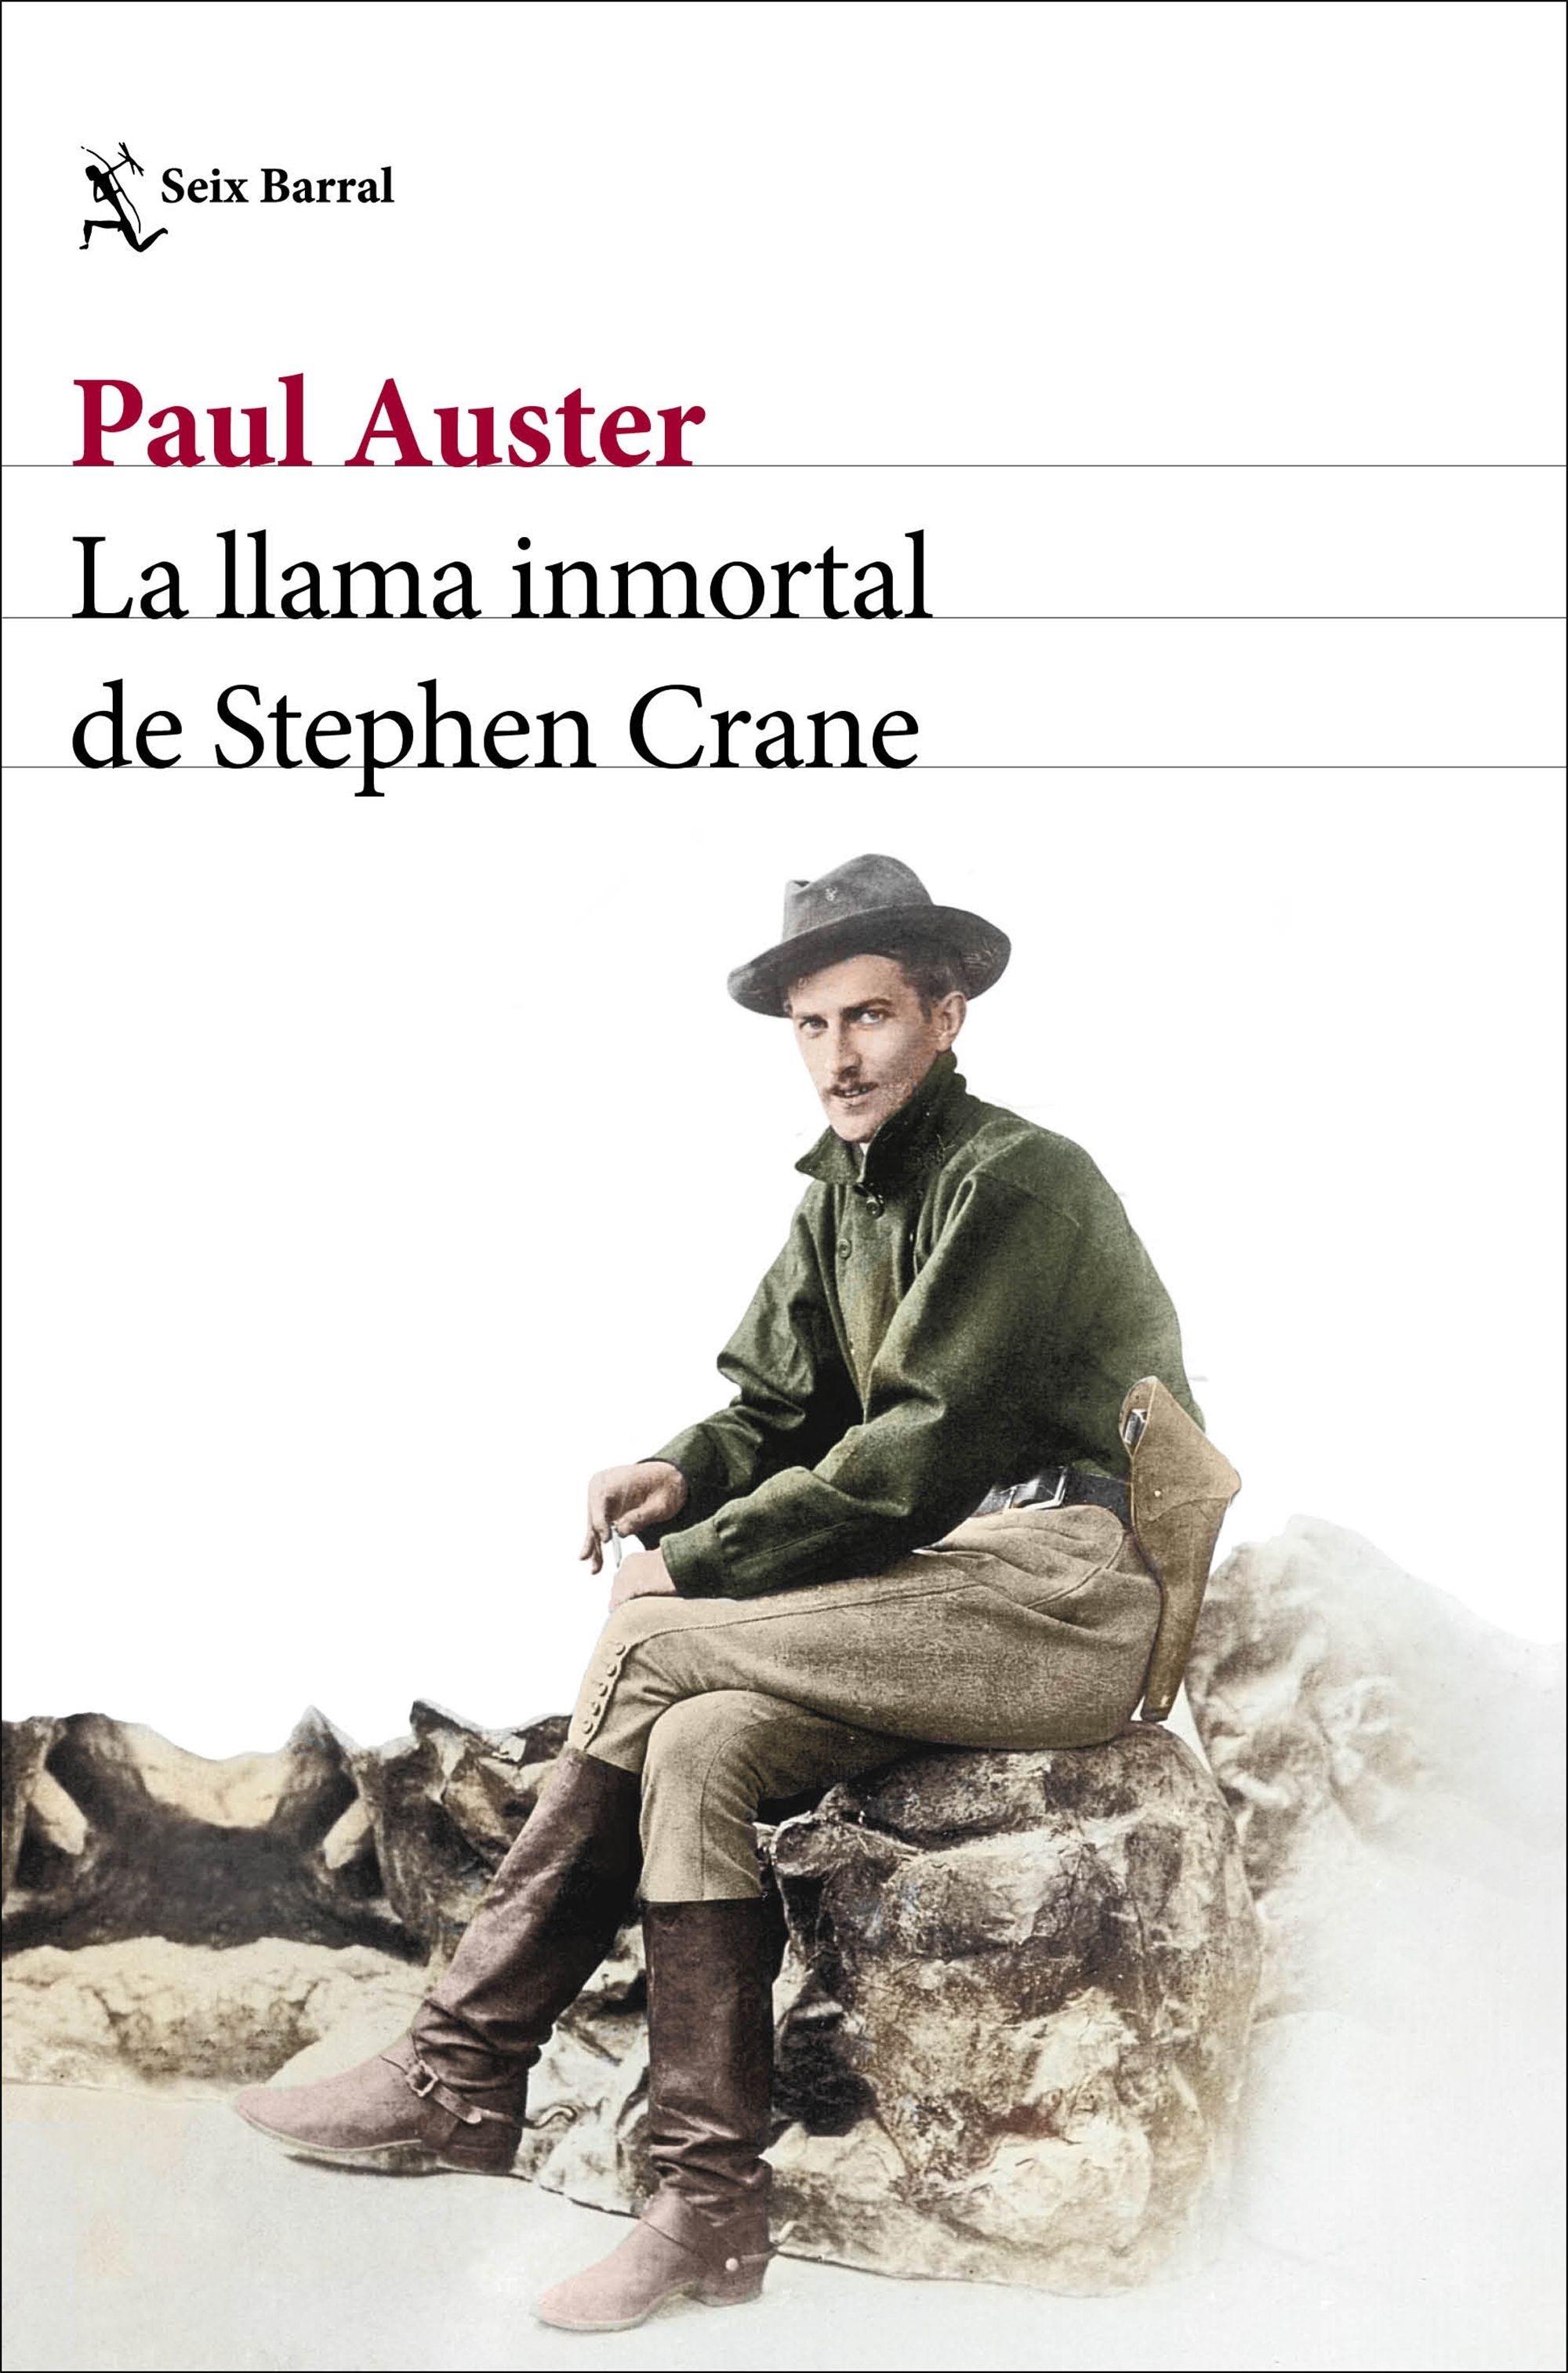 Llama inmortal de Stephen Crane, La. 